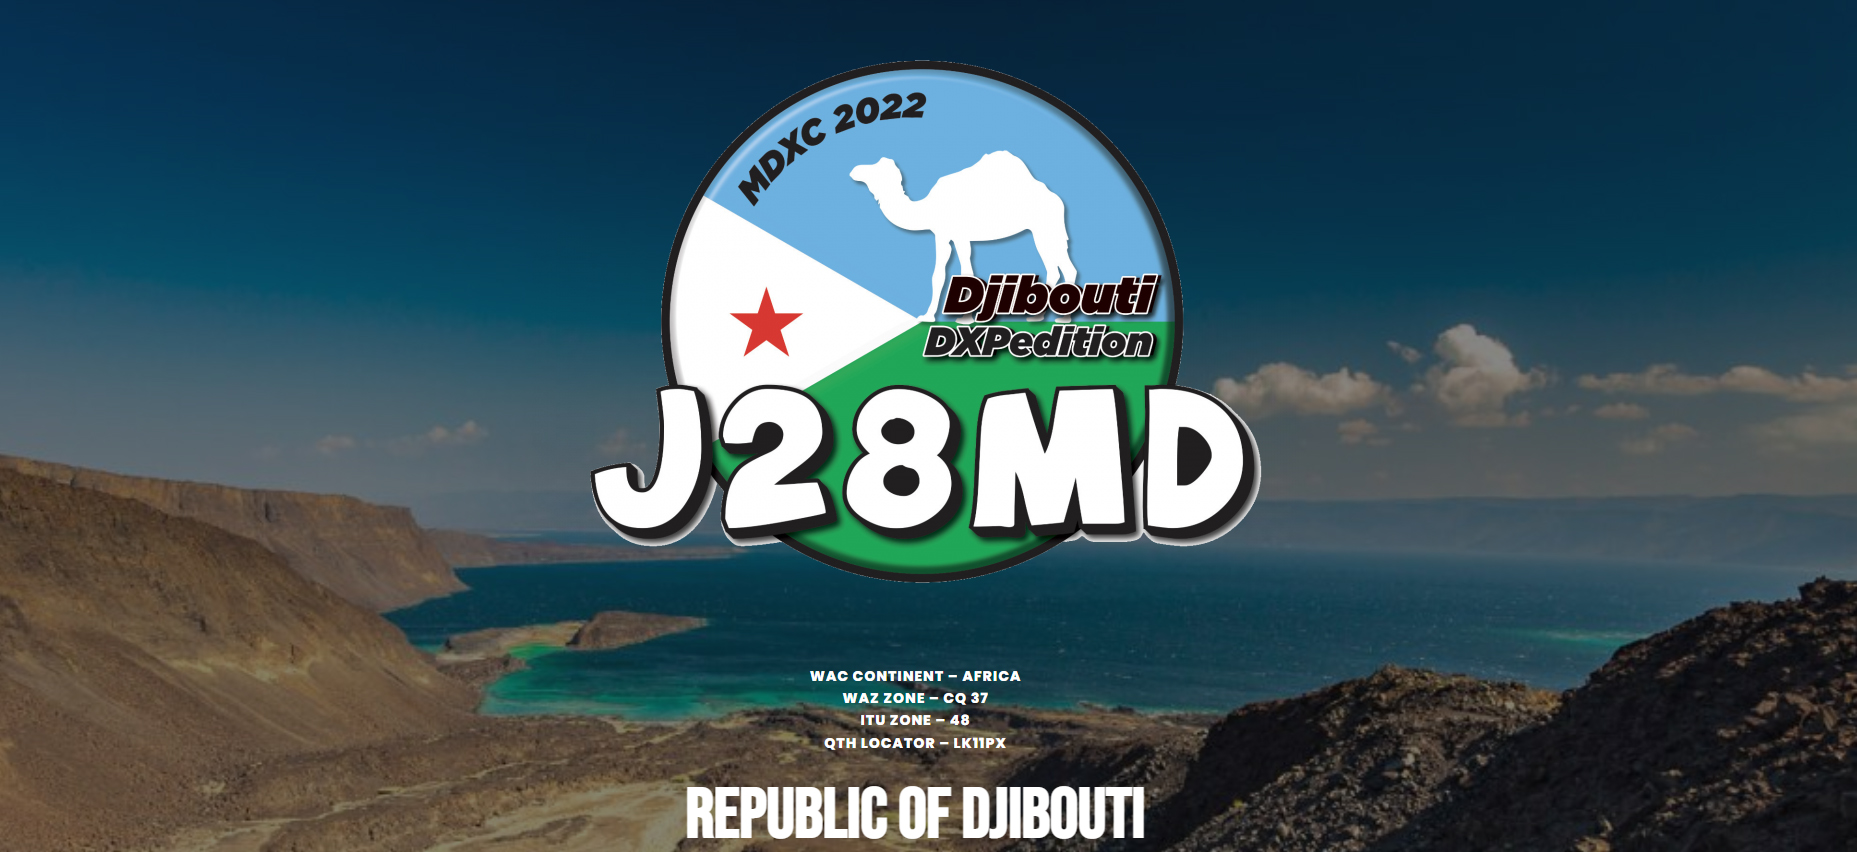 J28MD Djibouti saranno attivi in FT8